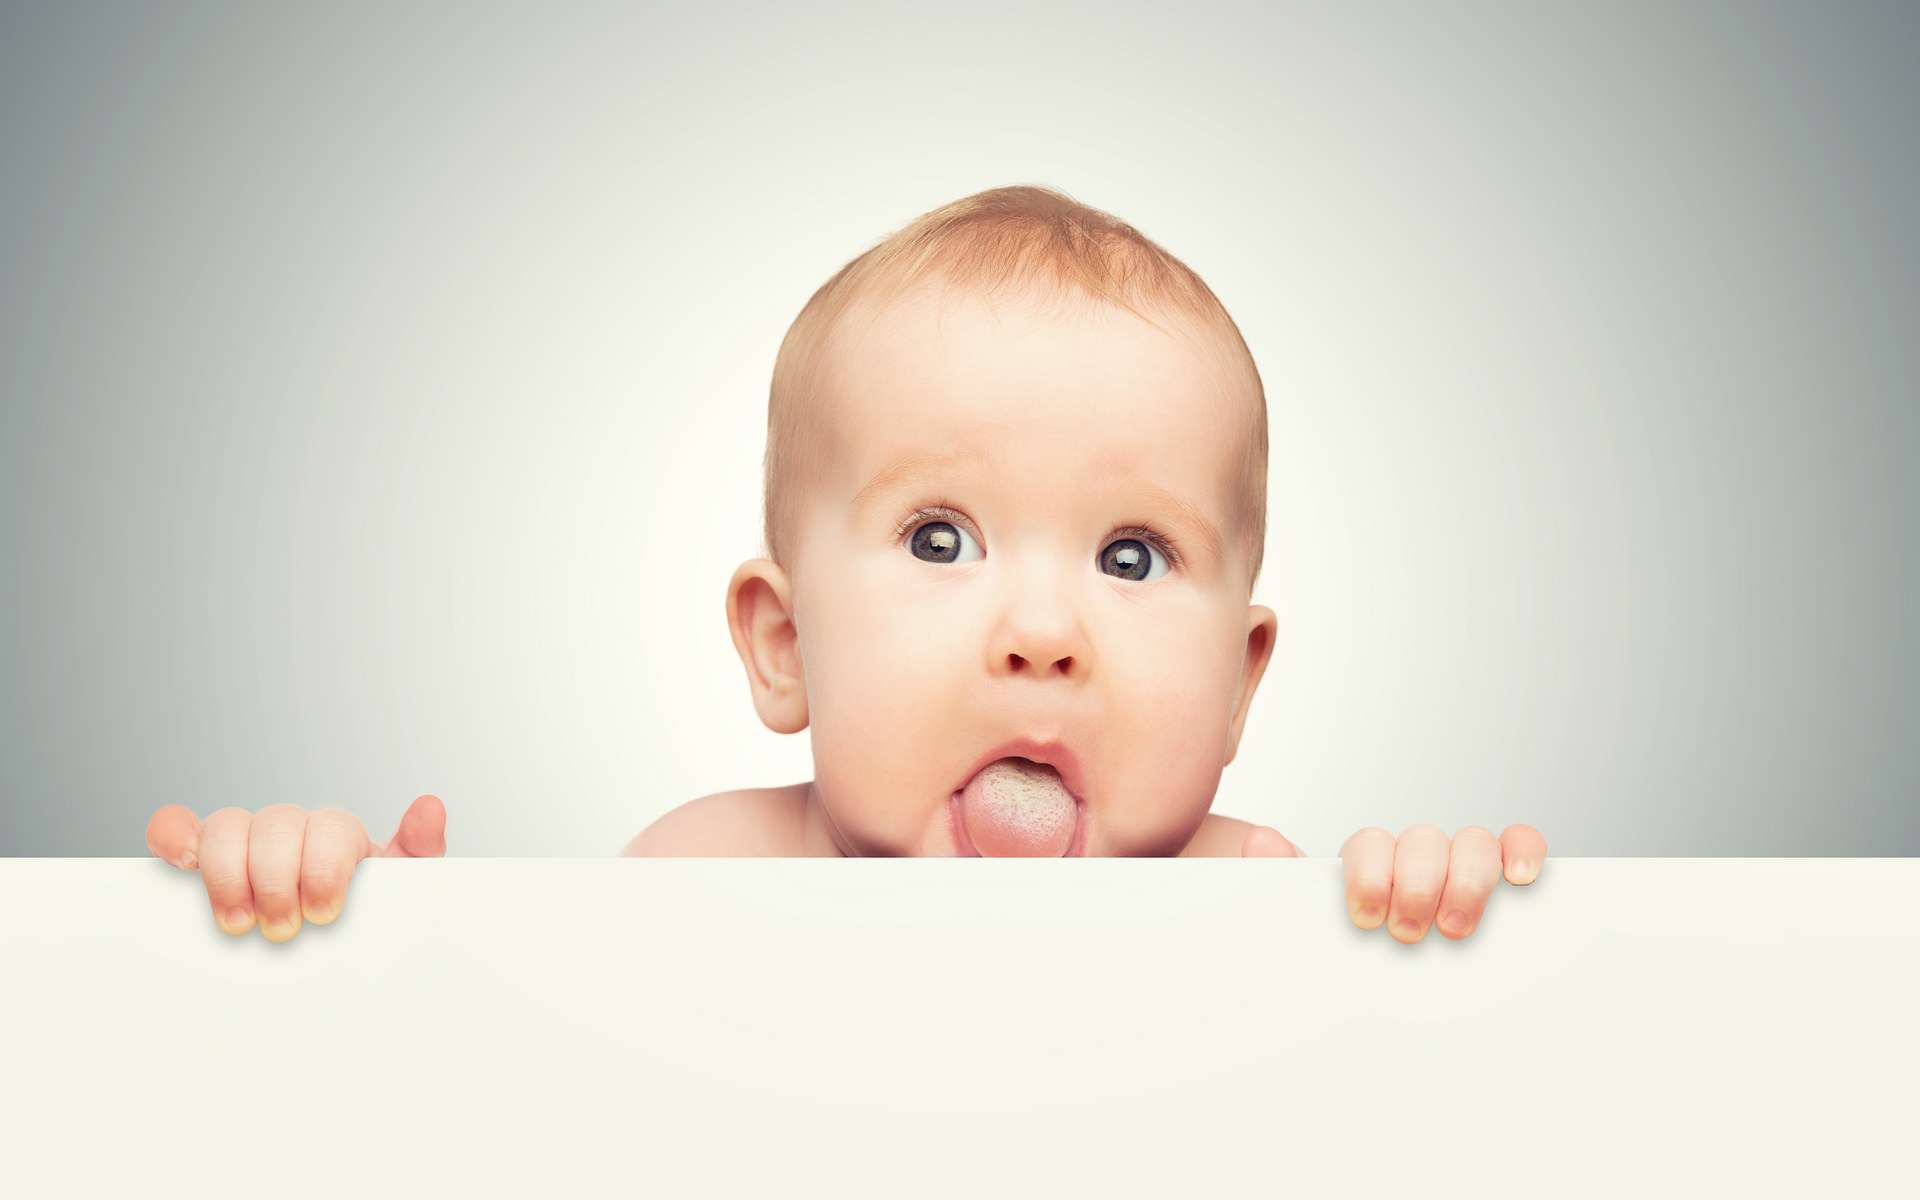 Un frein de langue restrictif est une gêne pour le nouveau-né, empêchant la langue de se mouvoir correctement. © JenkoAtaman, Adobe Stock